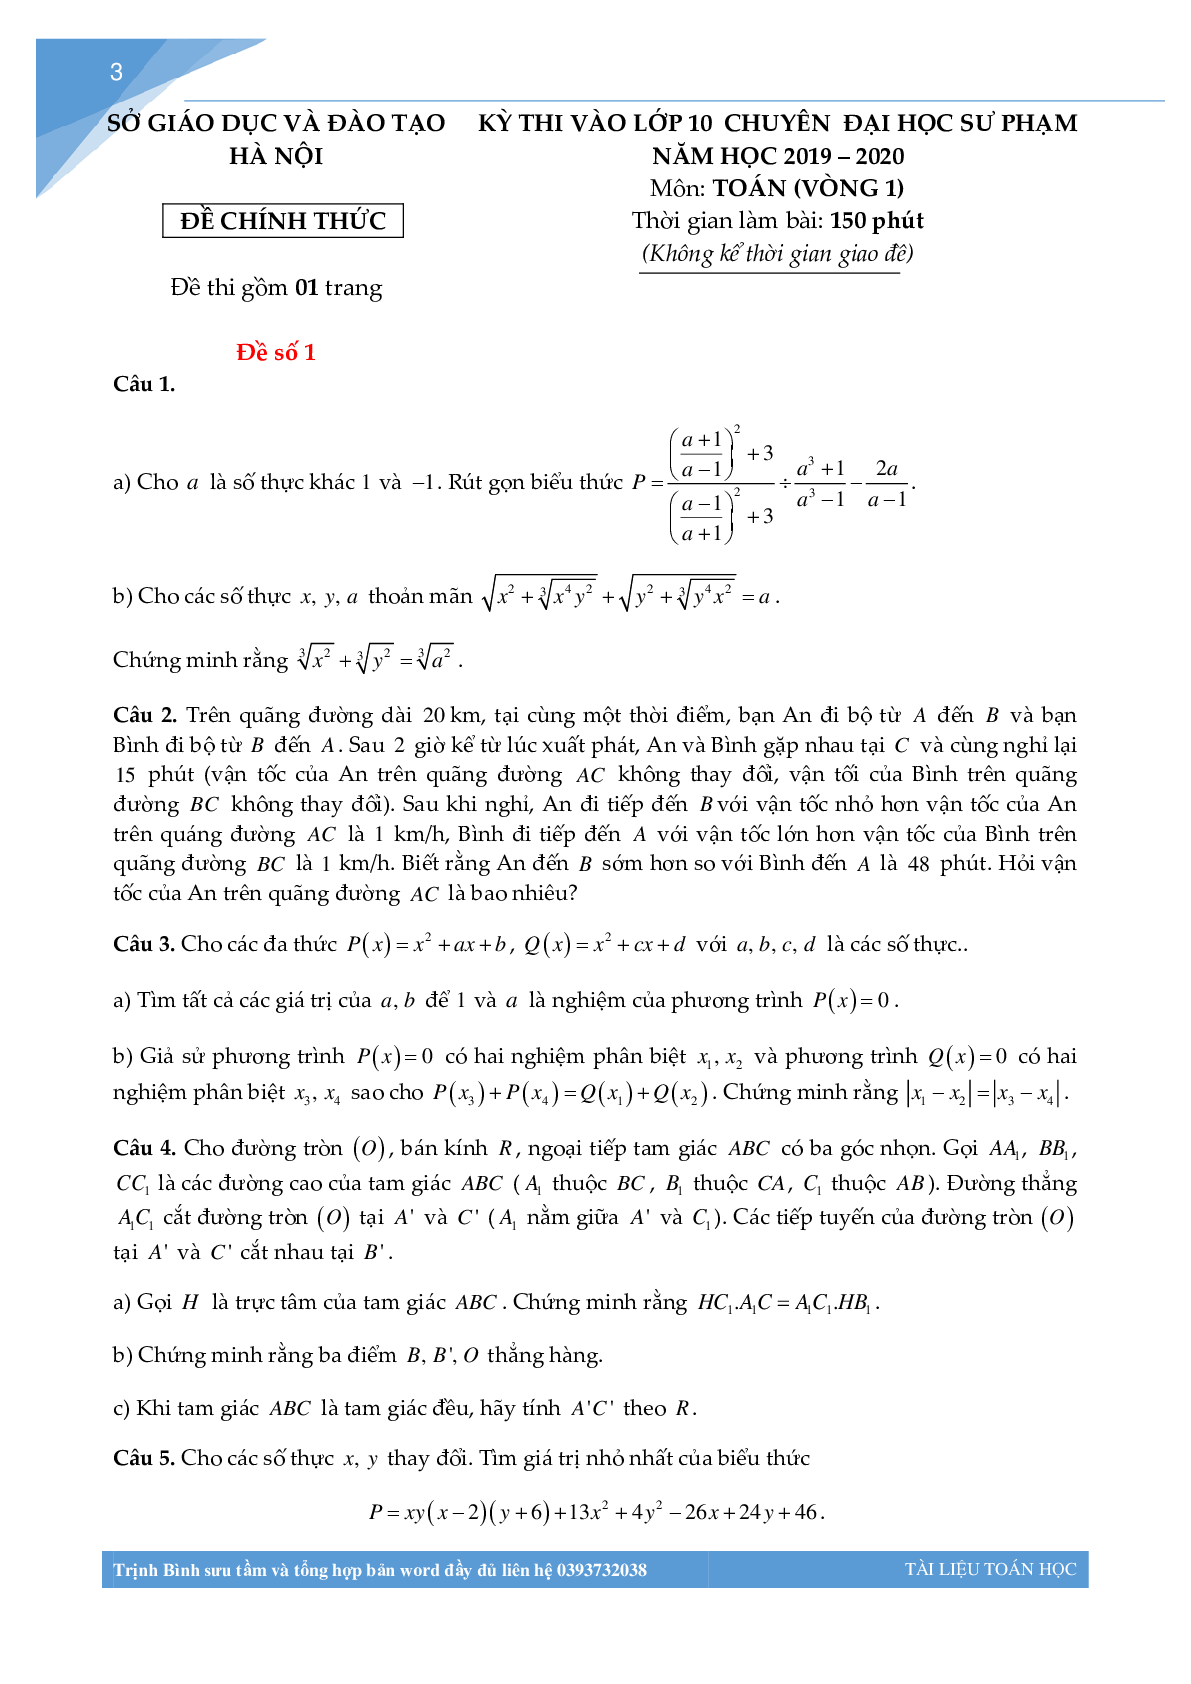 Bộ đề thi toán vào lớp 10 chuyên đại học sư phạm Hà Nội (trang 2)